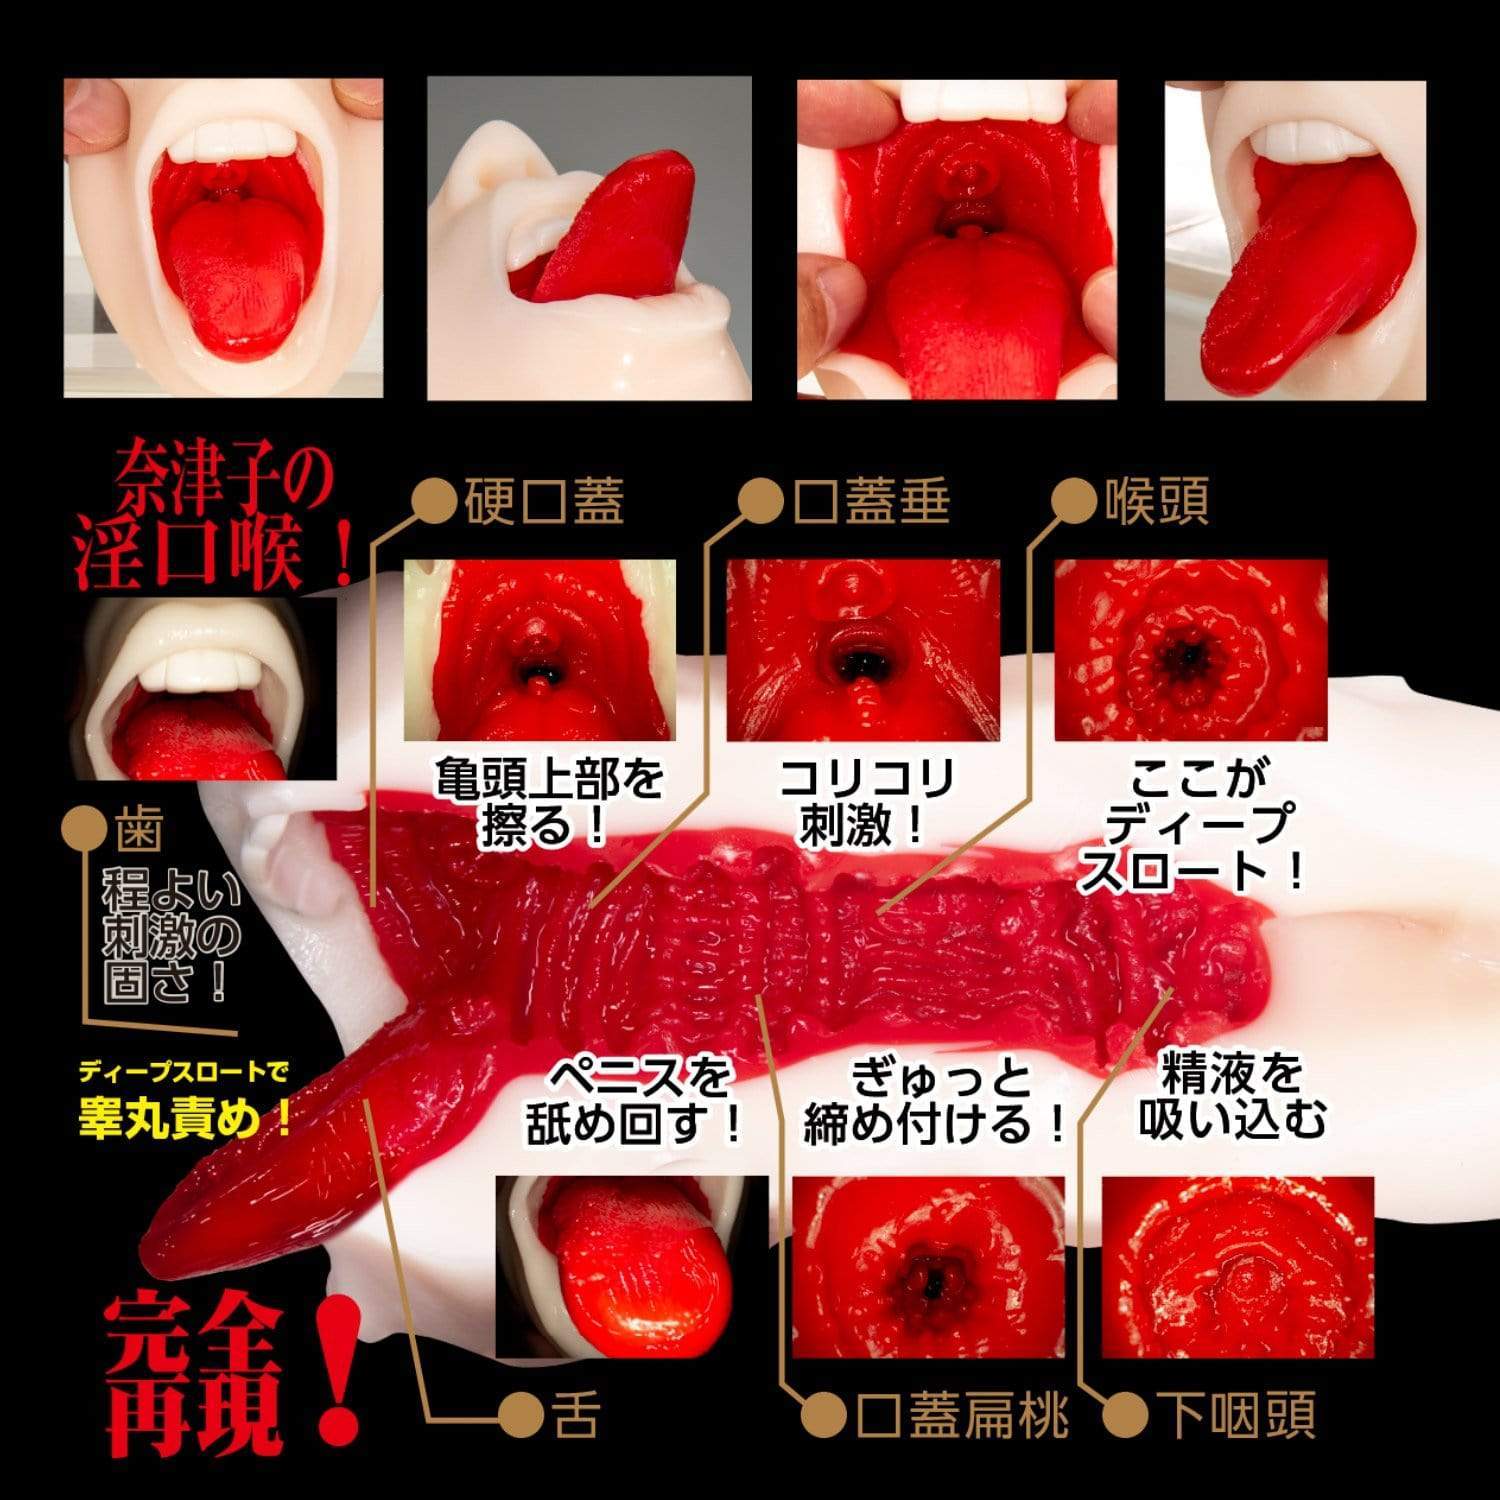 NPG - Super Blow Job Geki Fera Mishima Natsuko Onahole (Beige) -  Masturbator Mouth (Non Vibration)  Durio.sg